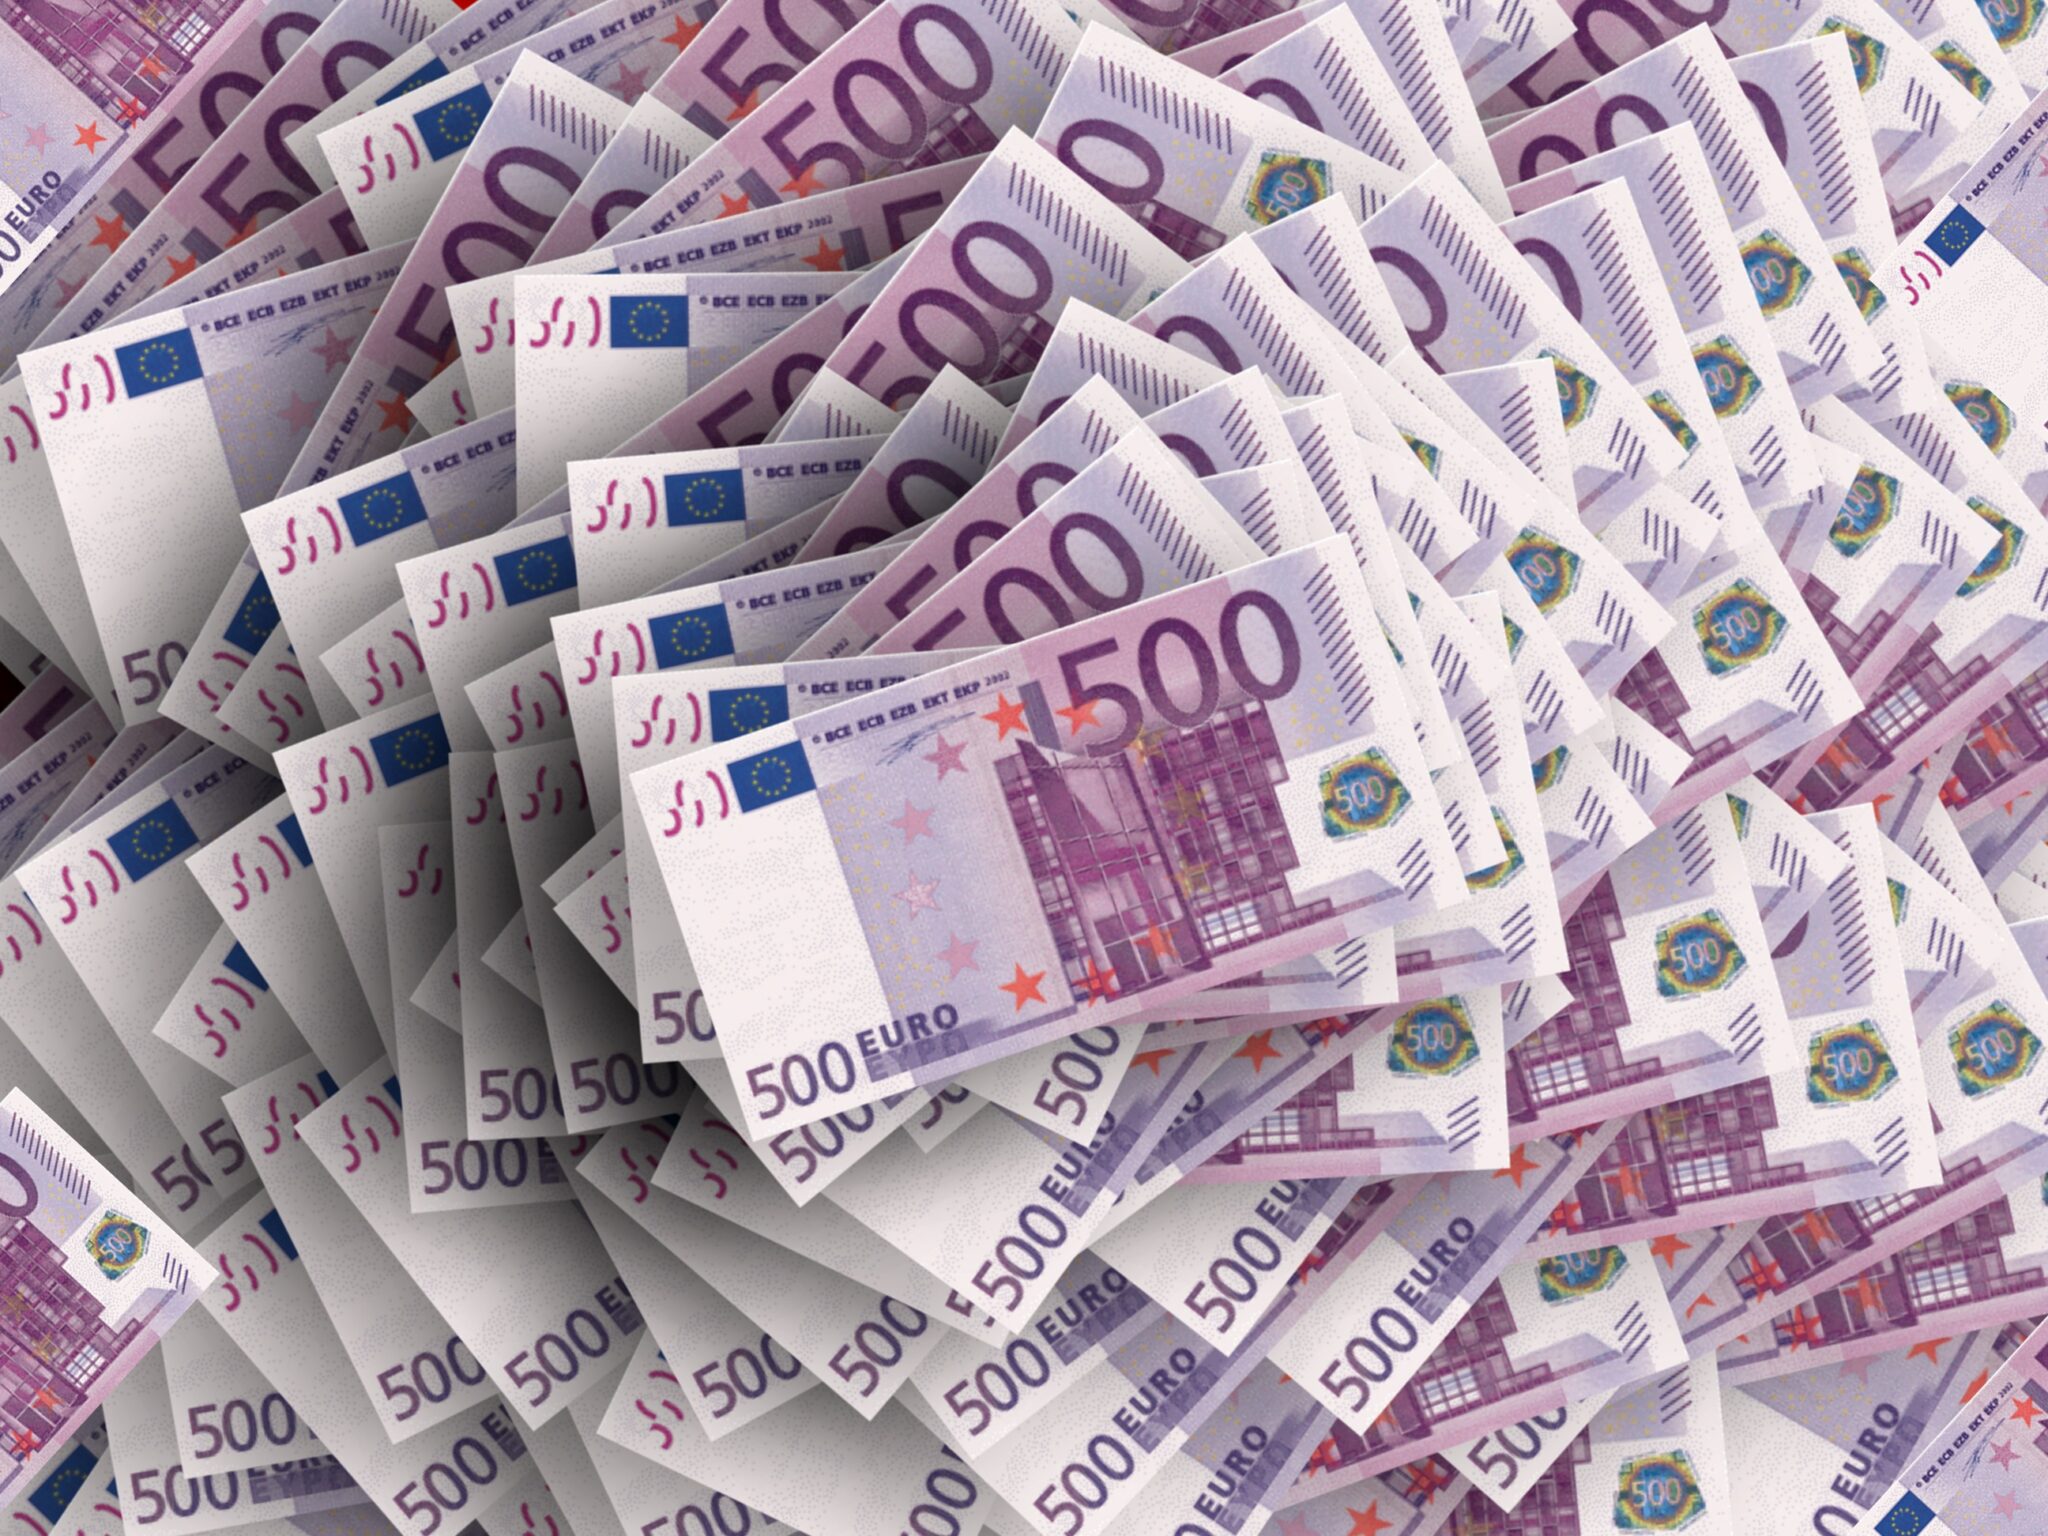 Viele gestapelte 500-Euro-Scheine